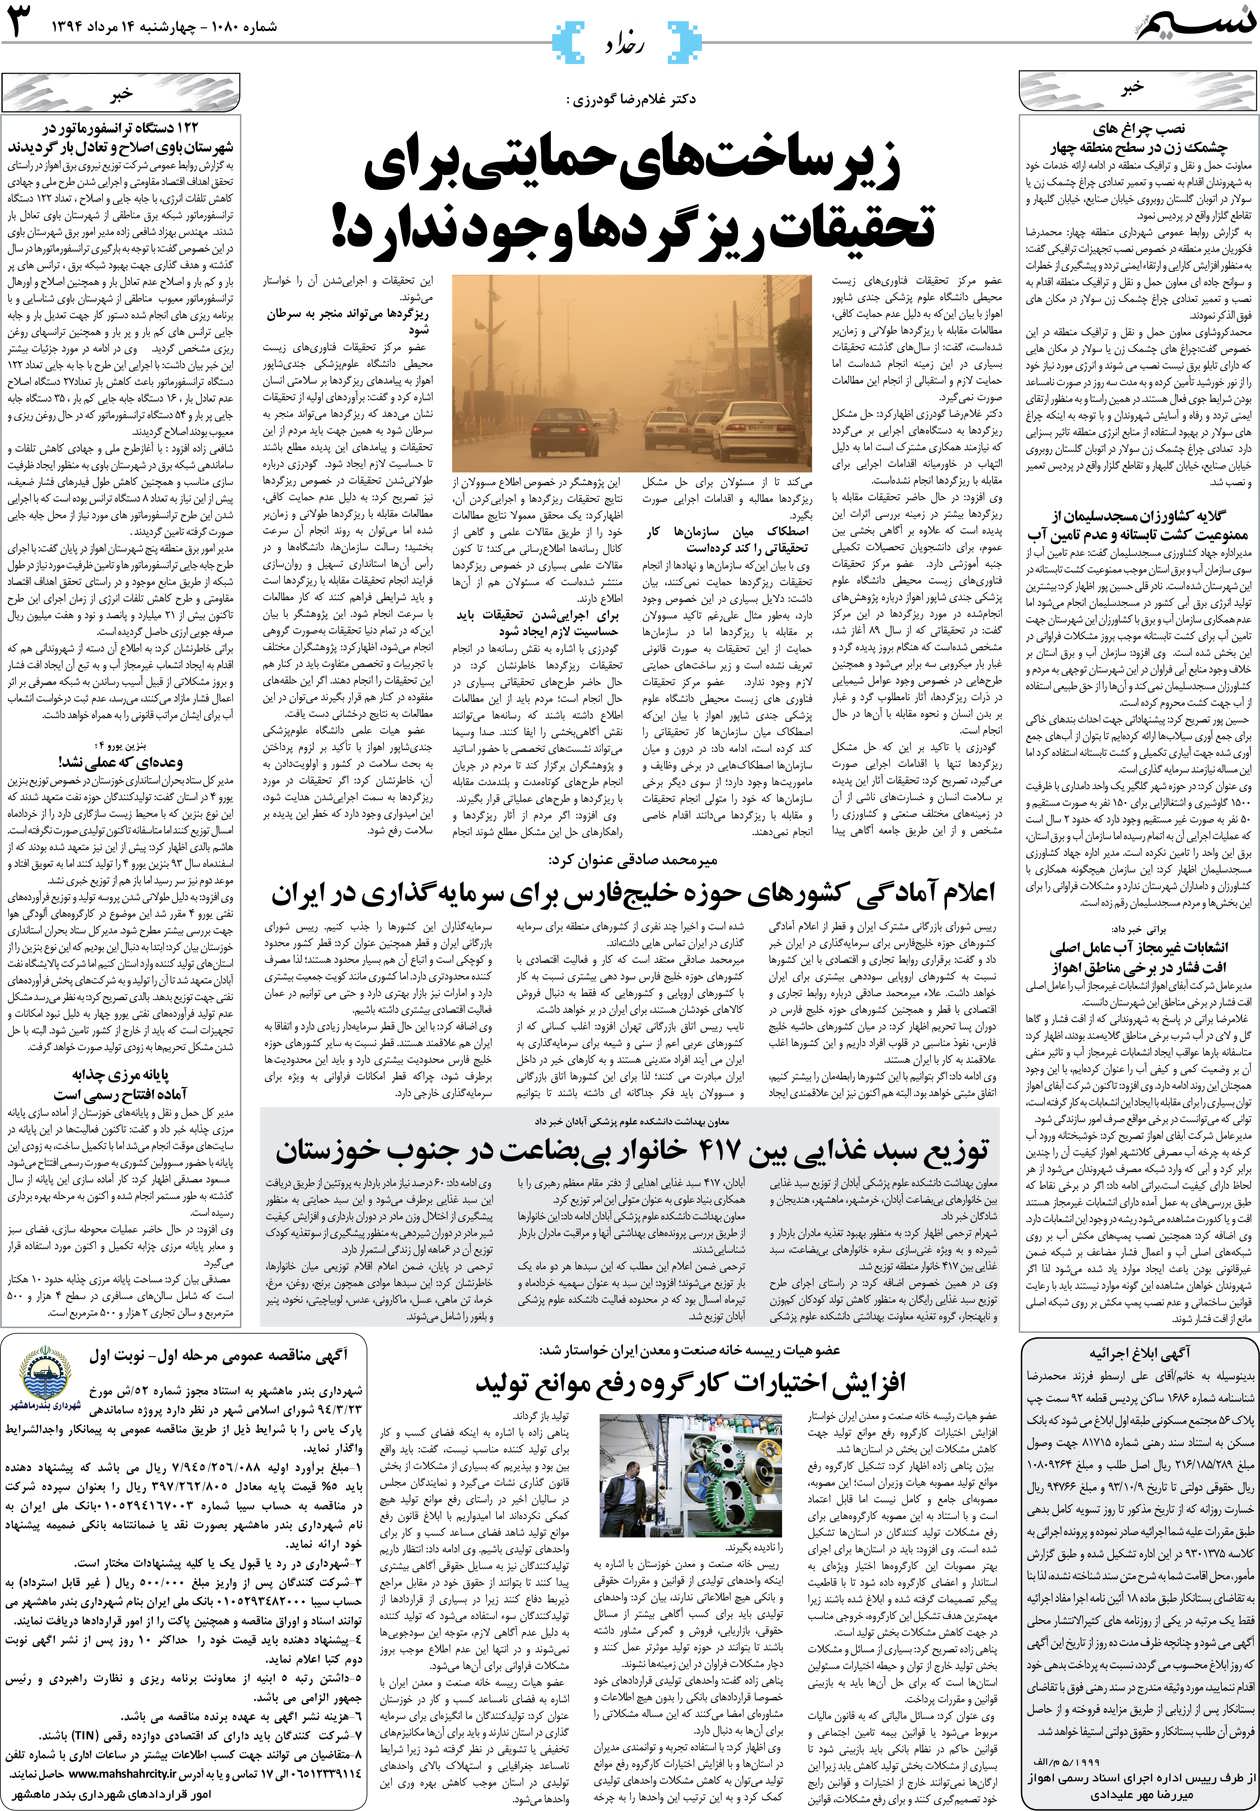 صفحه رخداد روزنامه نسیم شماره 1080